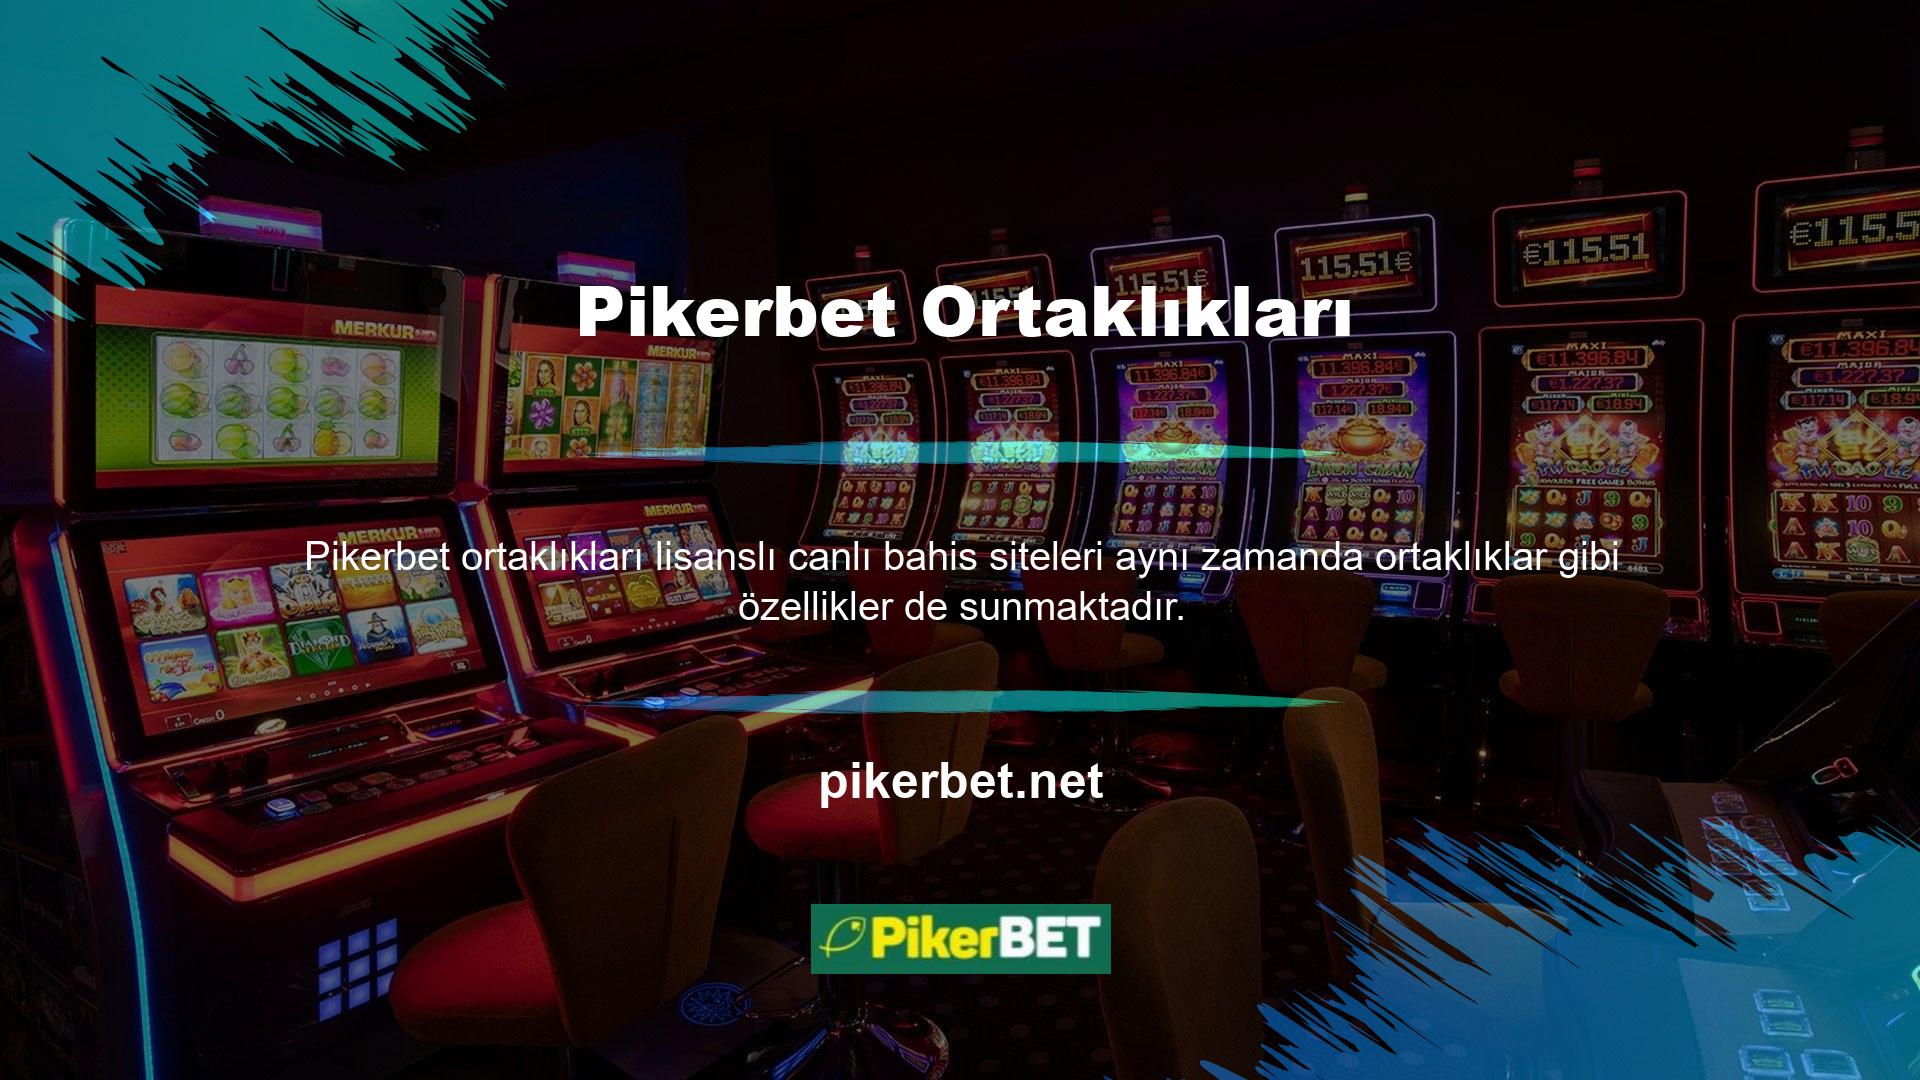 Kayıtlı şirket Pikerbet ile ortaklık başvurusunda bulunabilirsiniz